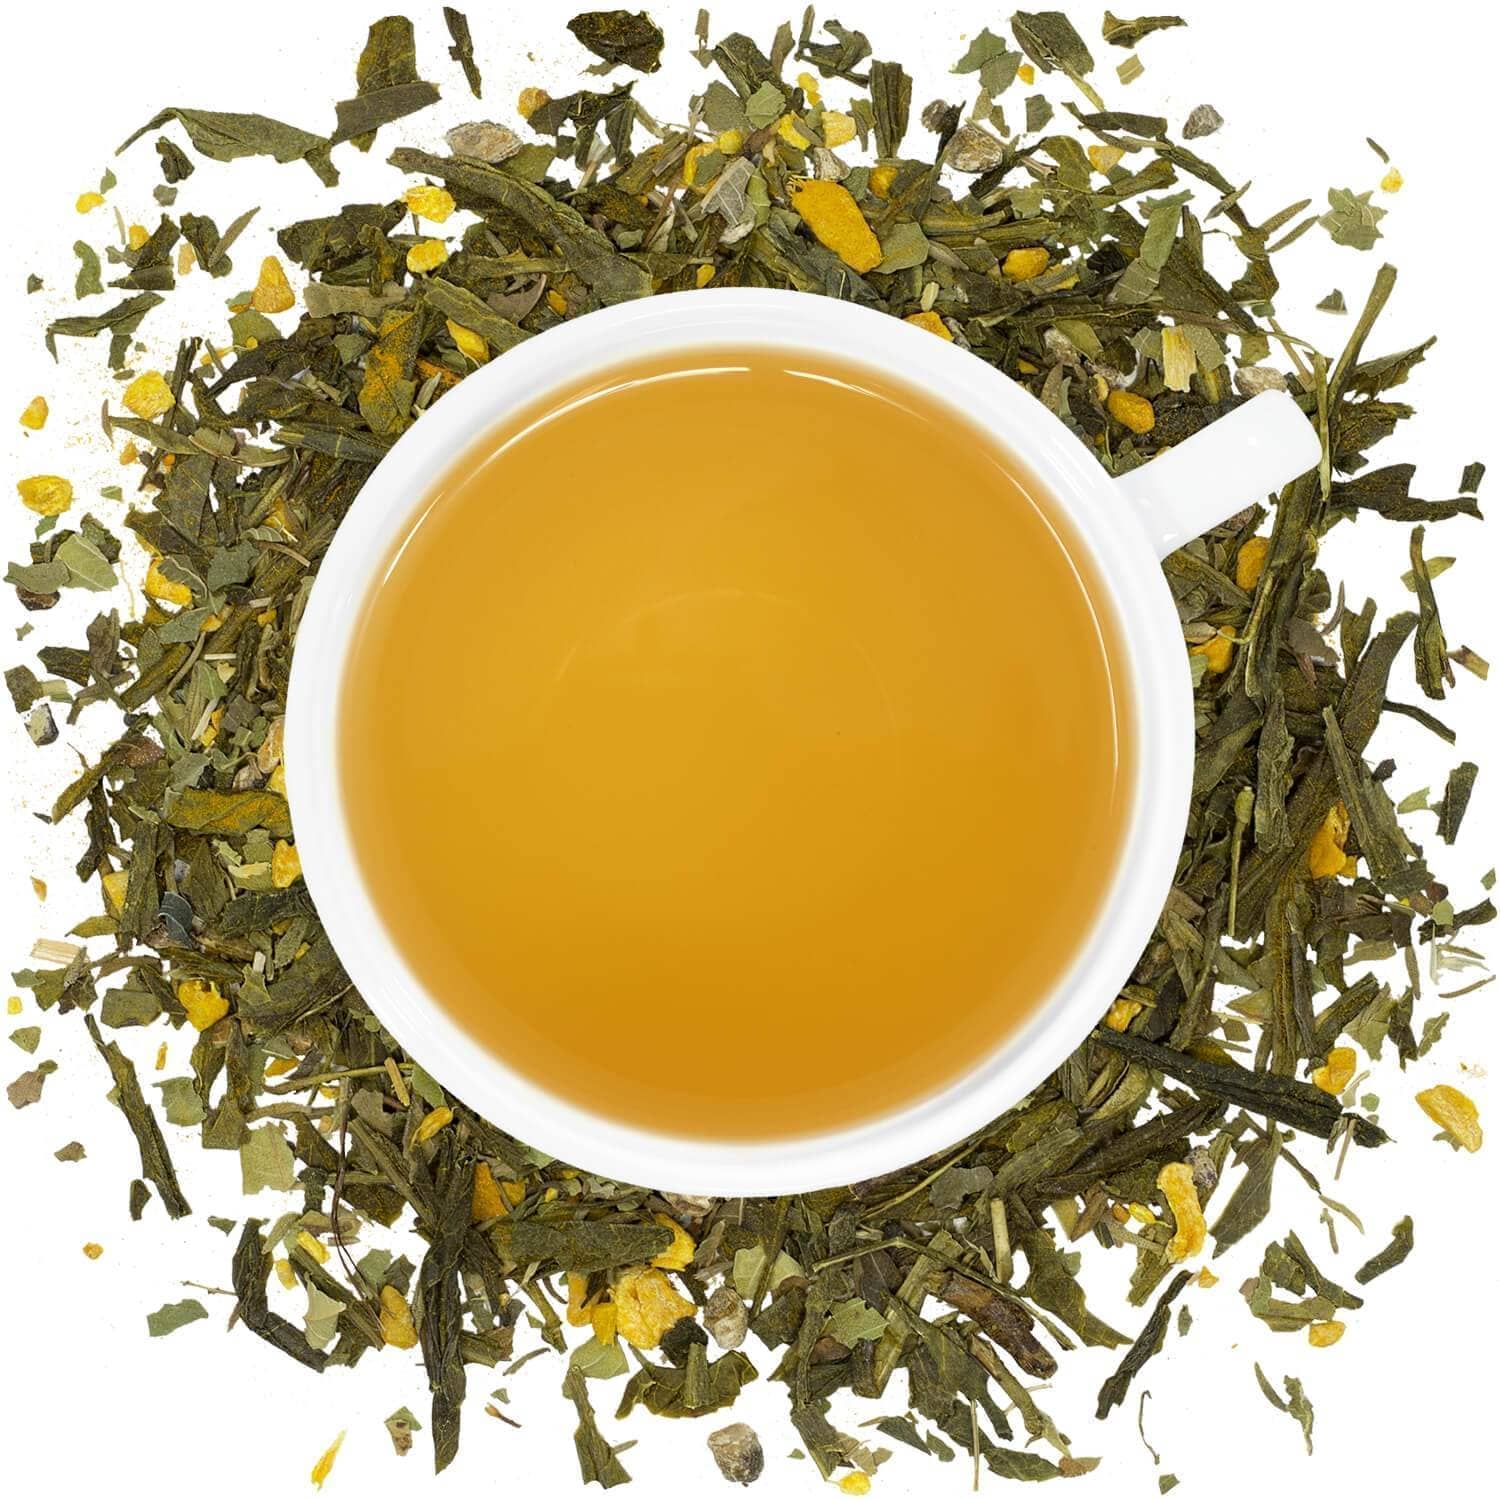 Organic Joint Health - Loose Leaf Tea - Full Leaf Tea Company